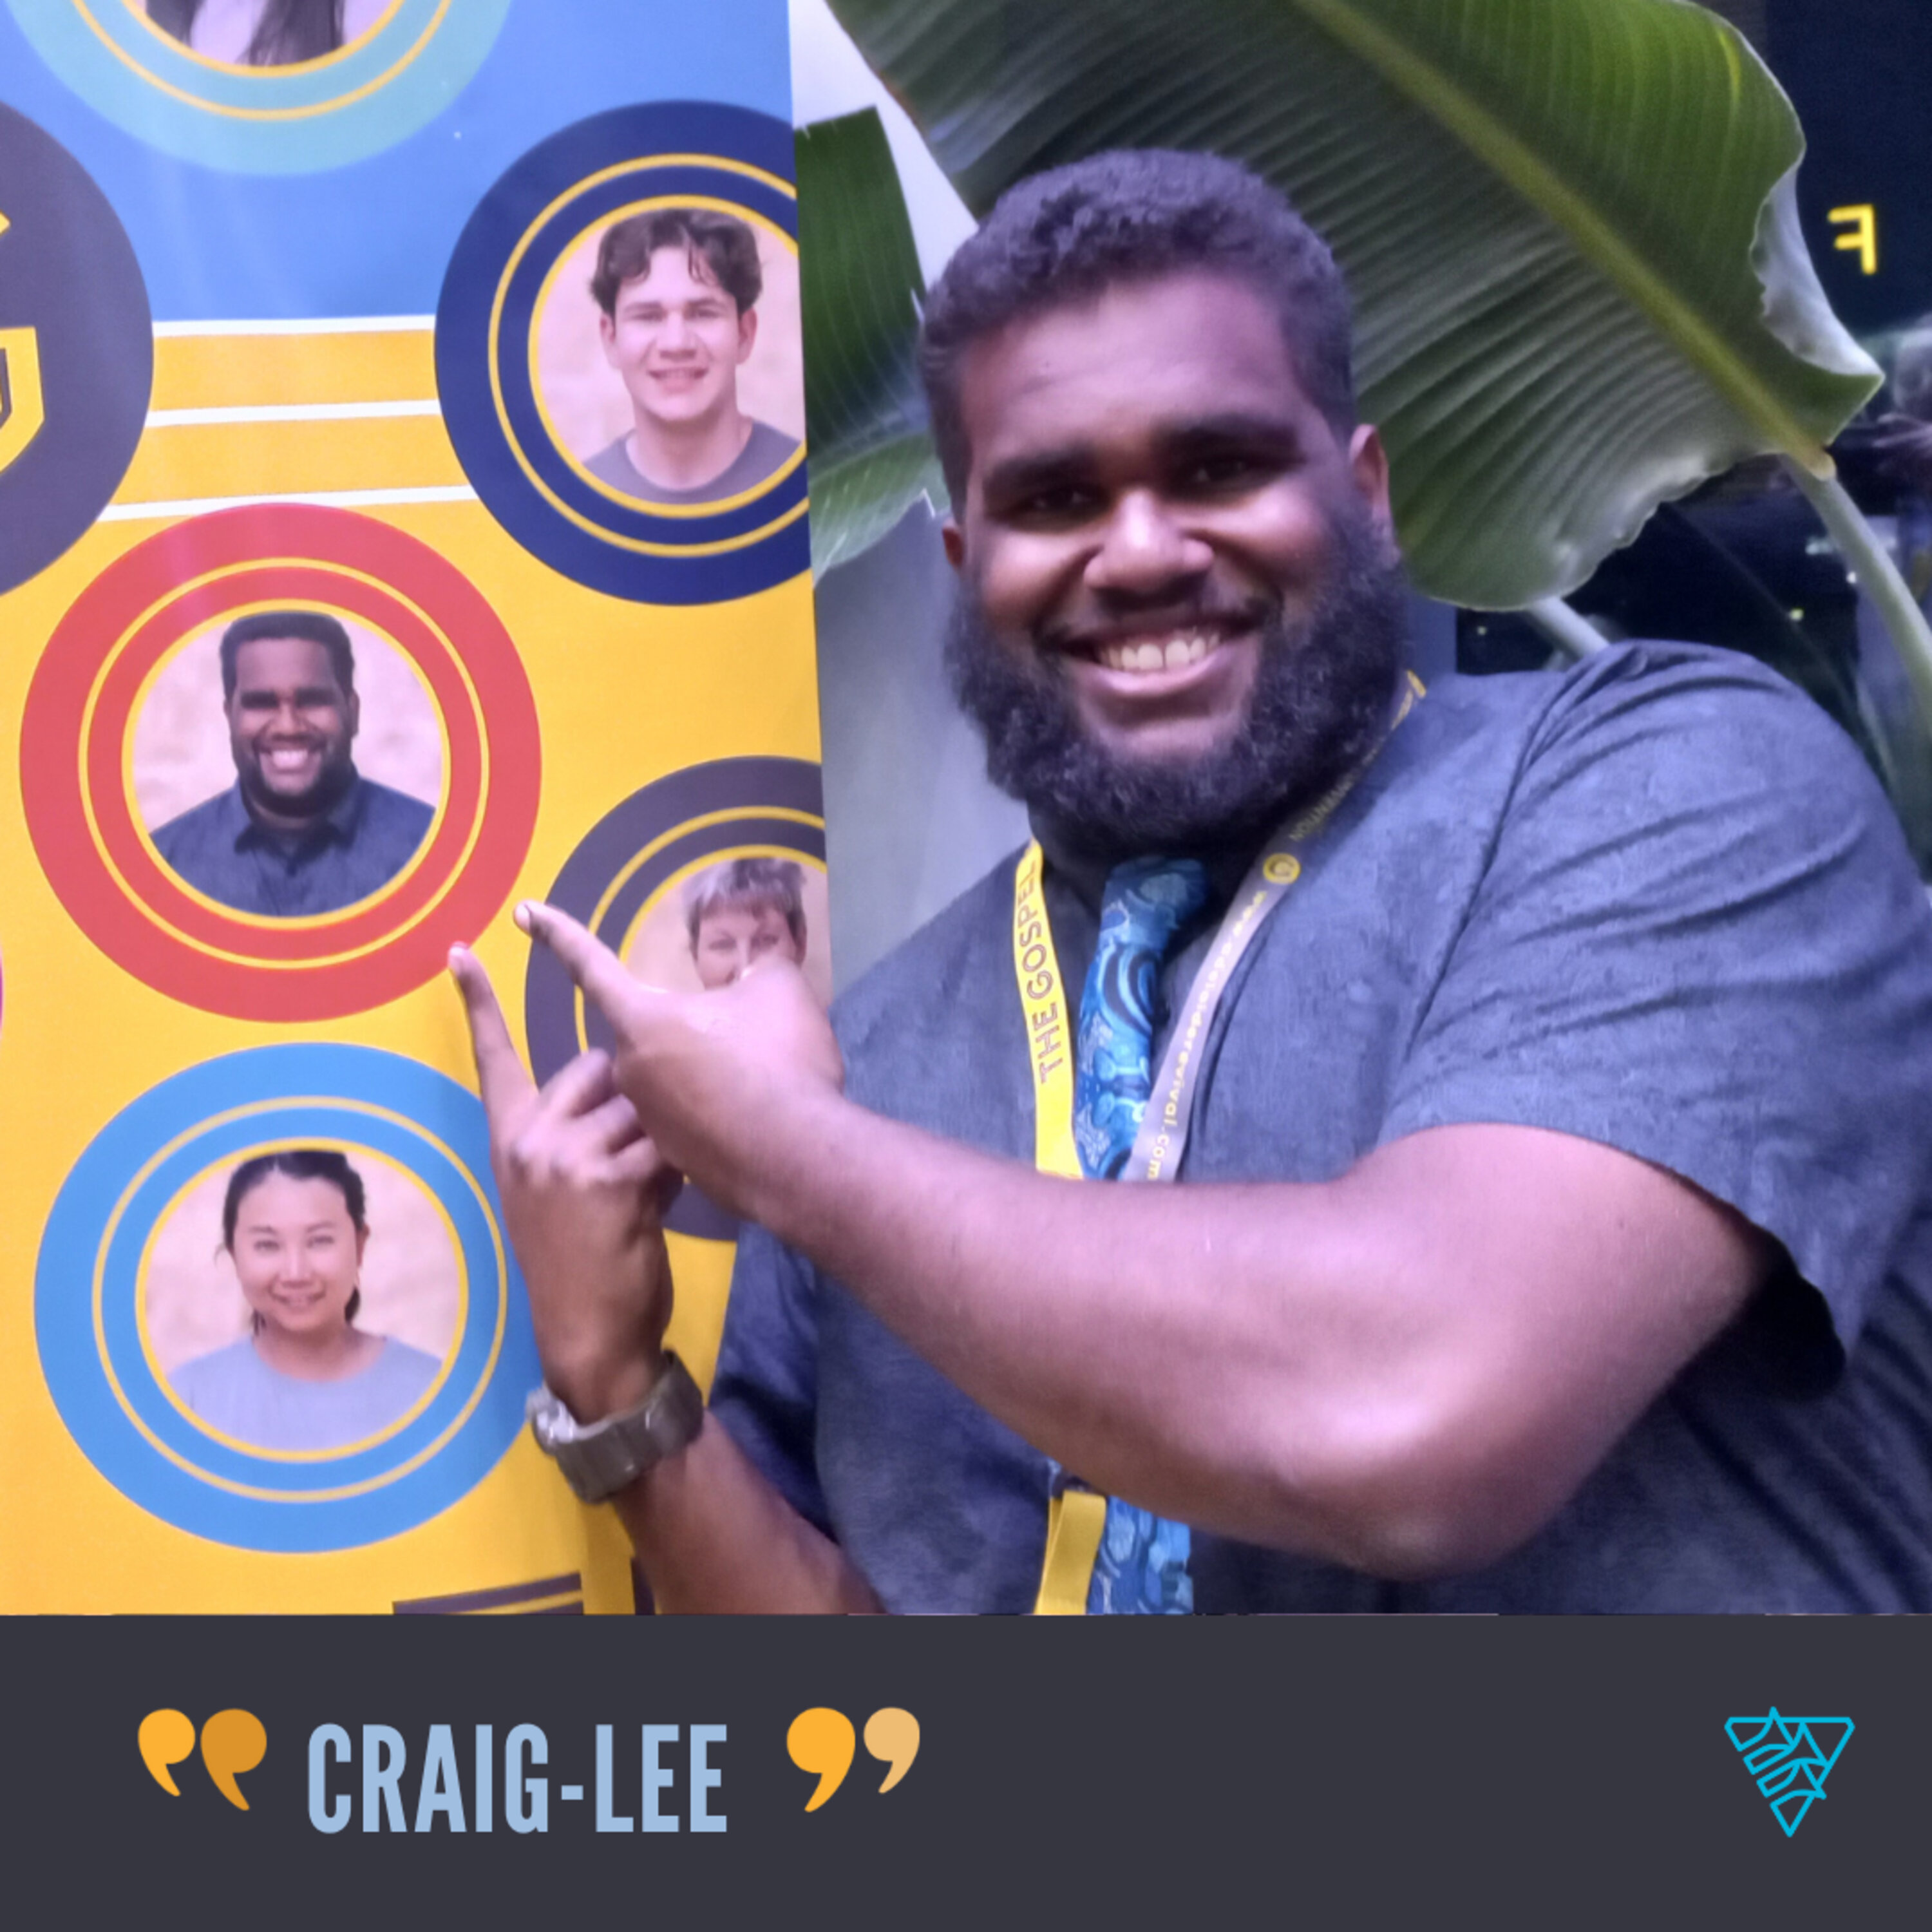 Craig-Lee's miracle ear